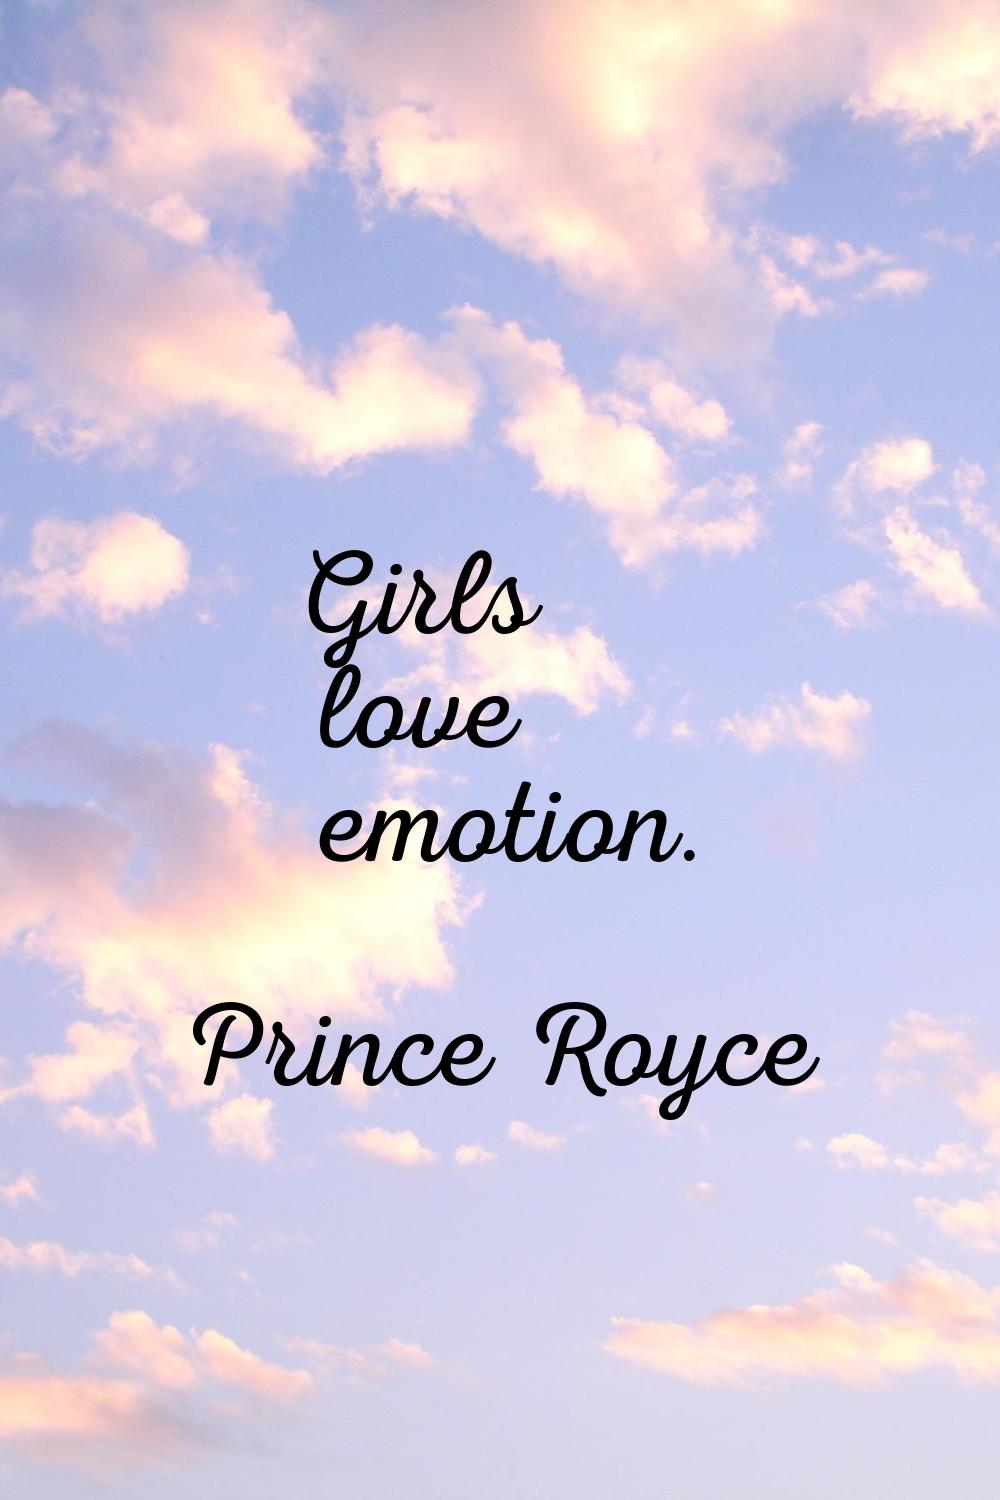 Girls love emotion.